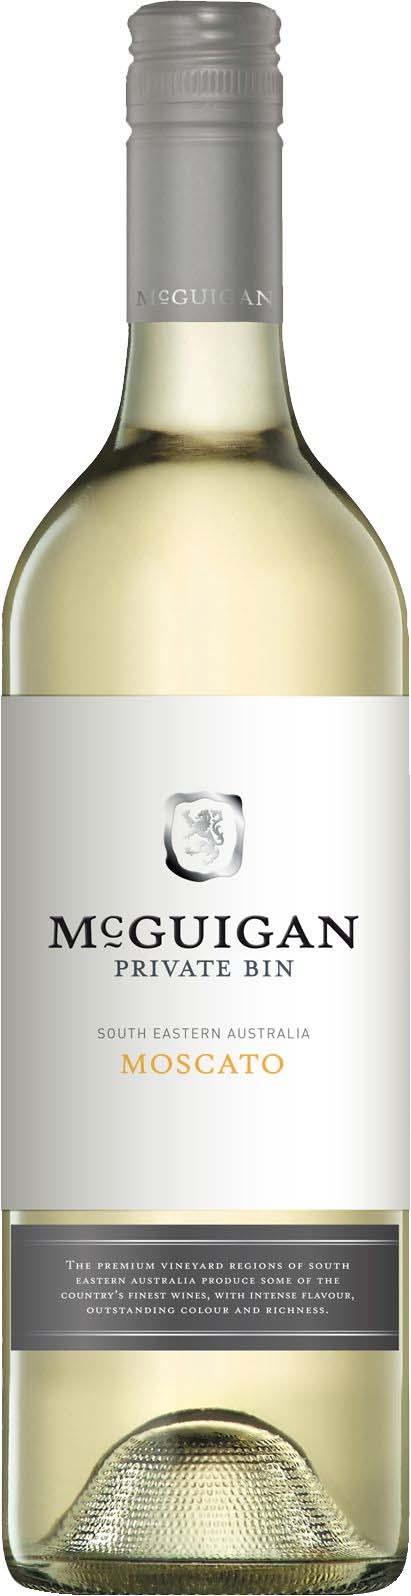 McGuigan Private Bin Moscato 2018 (Australia)